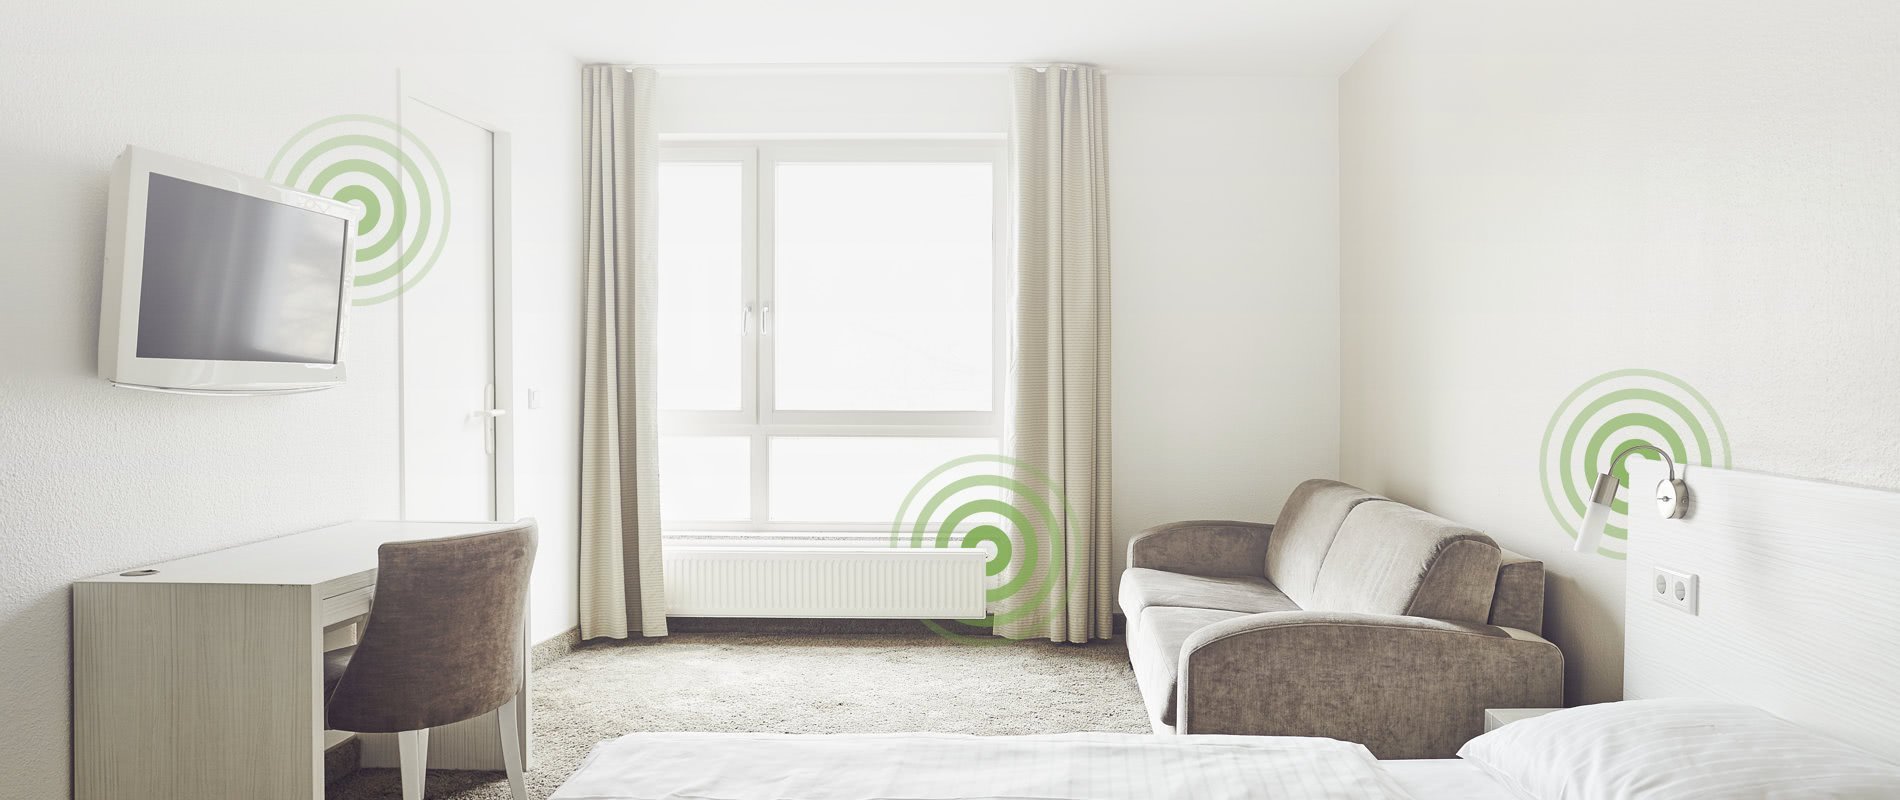 Zur Digitalisierung ntzt das Gastgewerbe immer öfter auch Smart Home-Anwendungen.